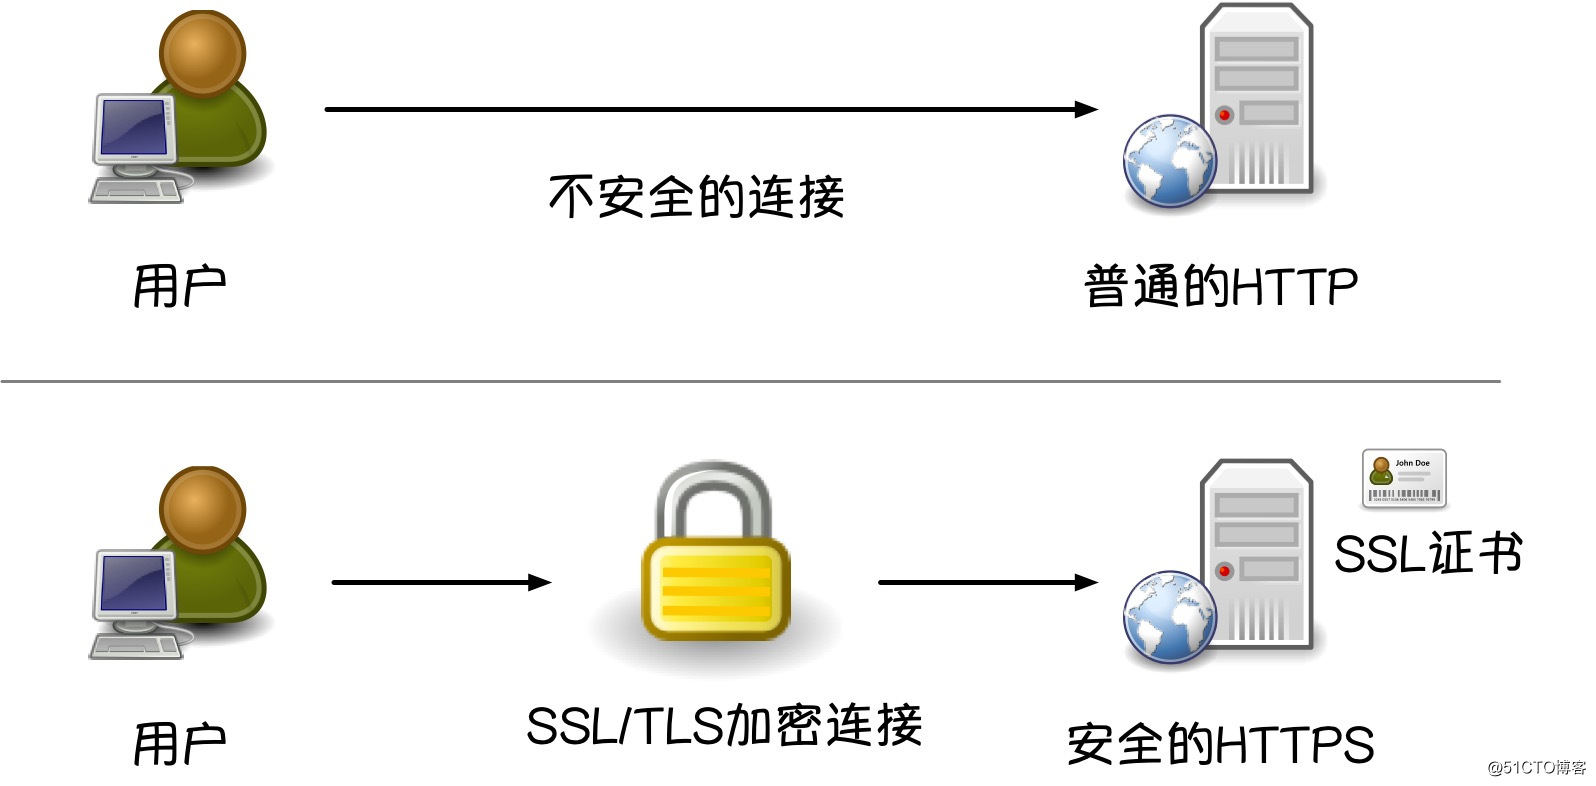 Figura 14: Una copia del diagrama esquemático de la diferencia entre HTTP y HTTPS.jpg